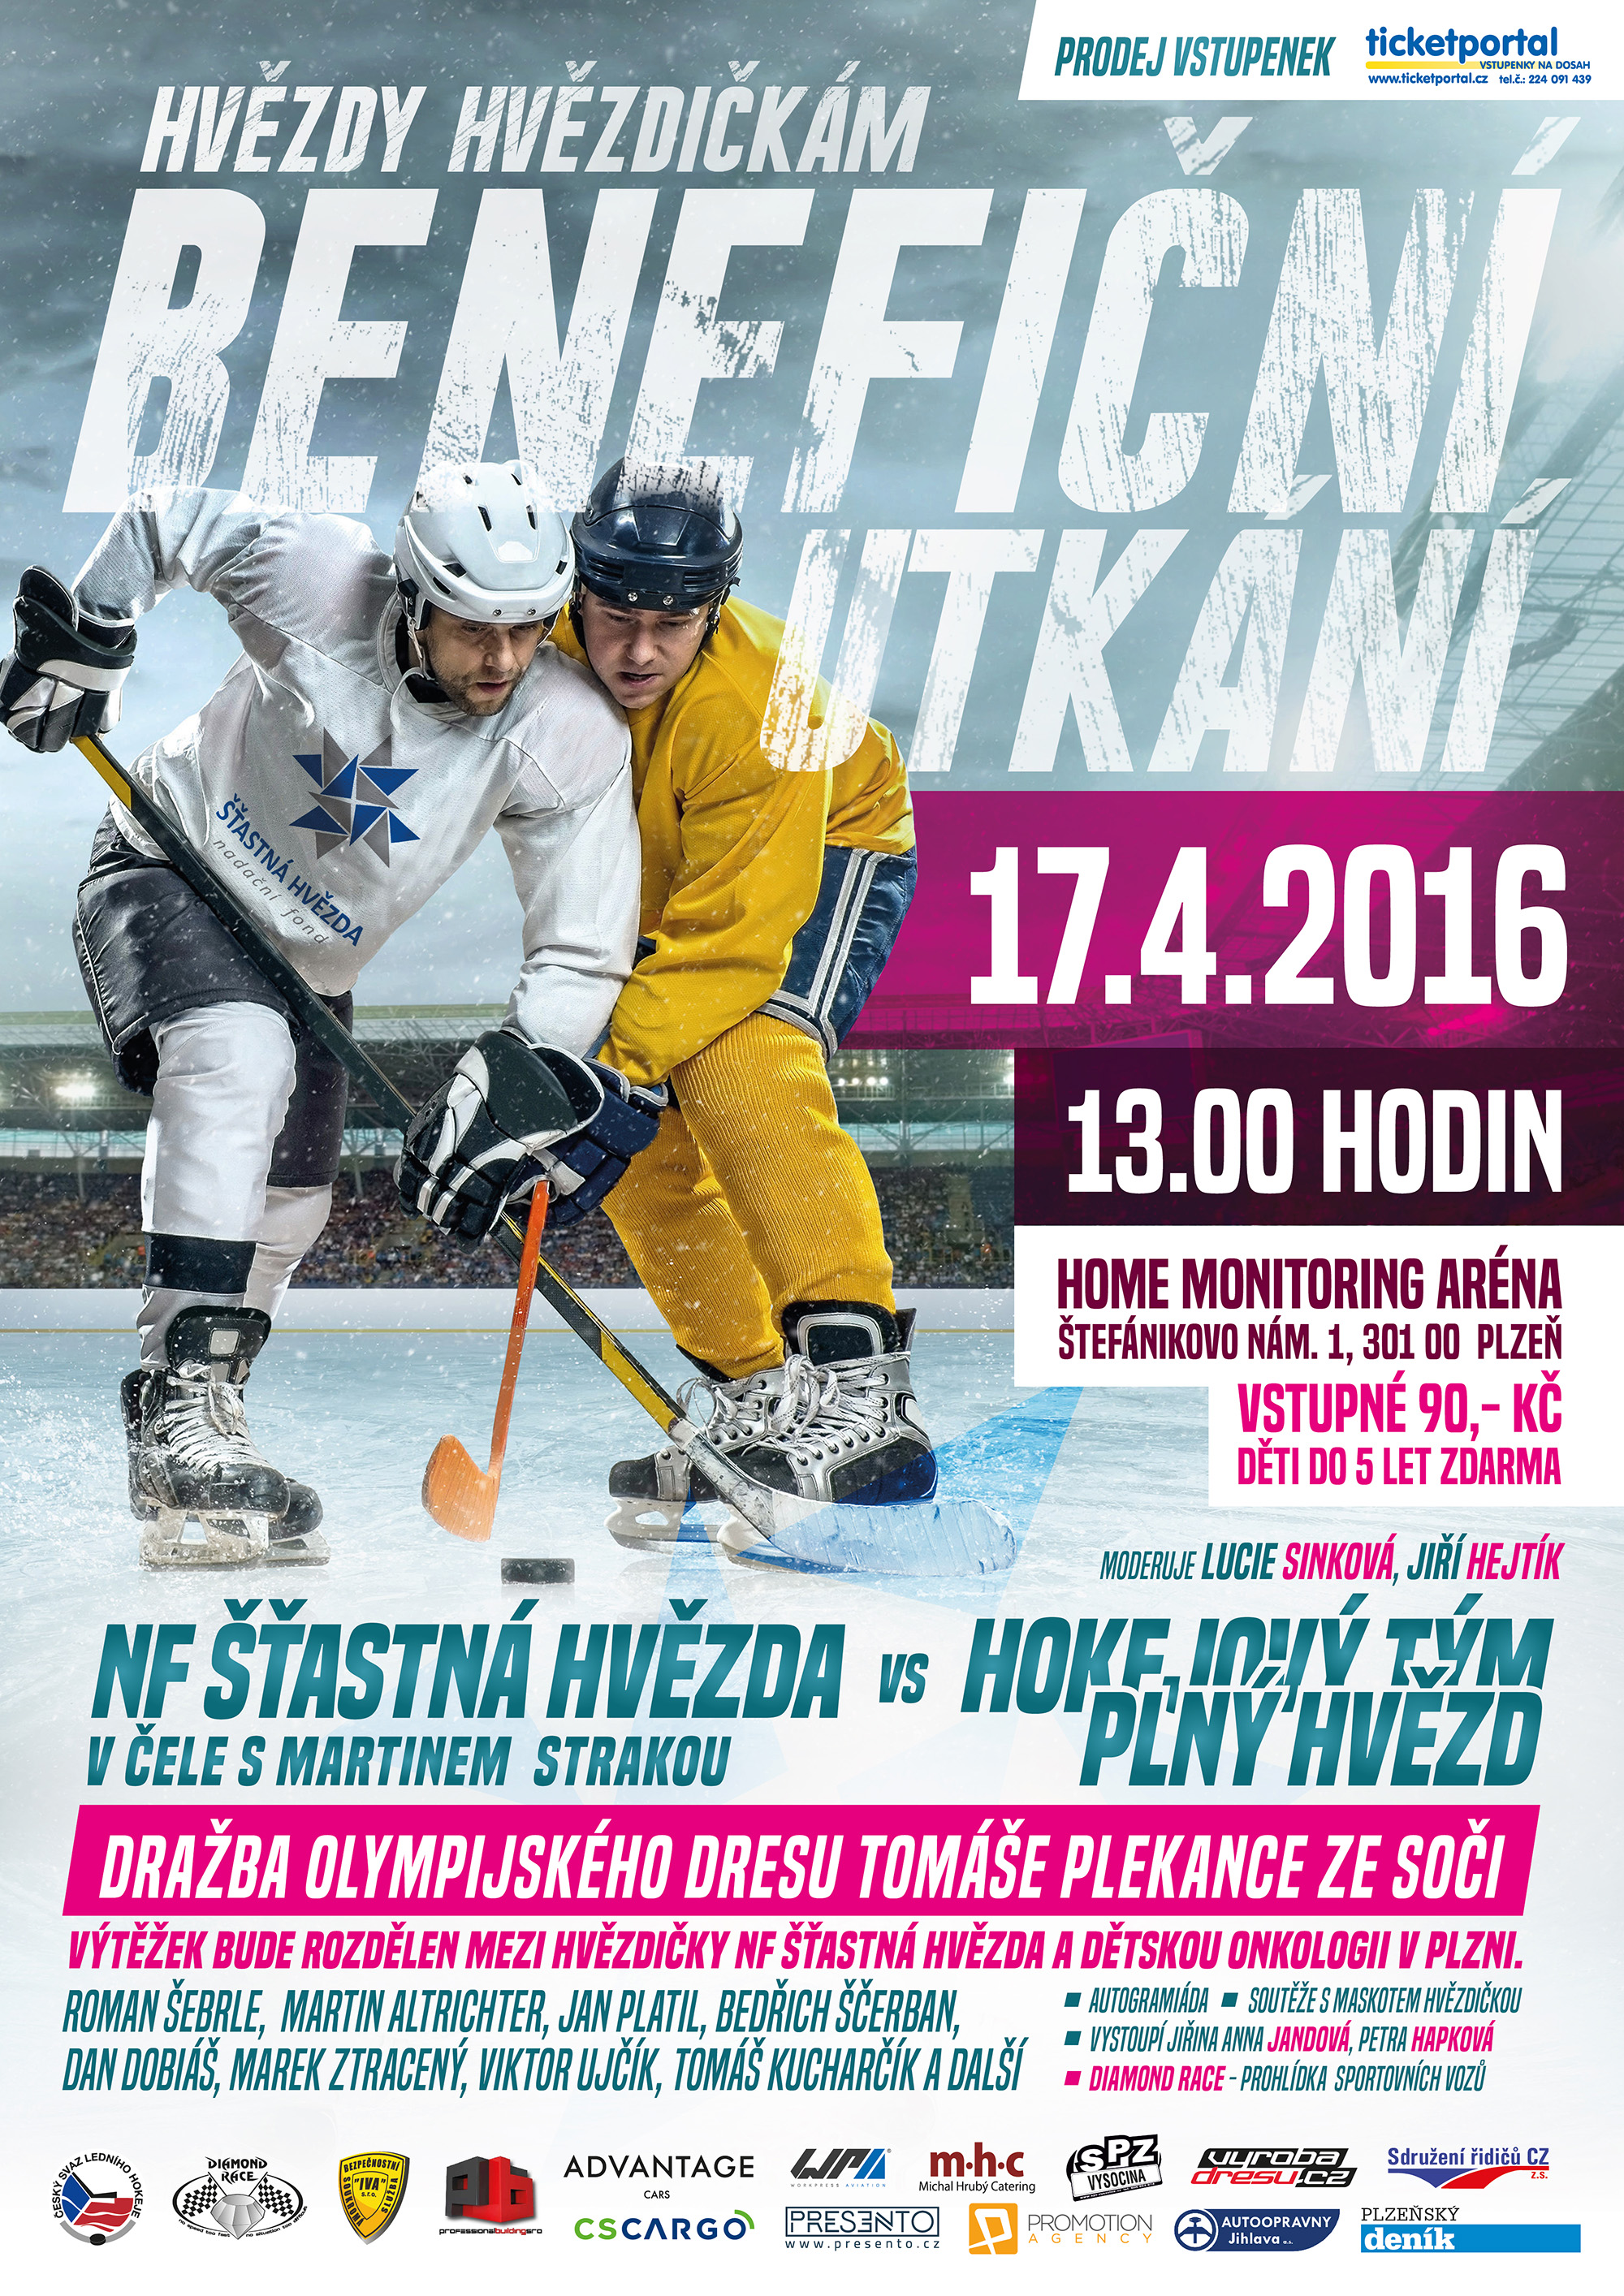 17.4.2016 benefiční hokejové utkání – Hvězdy hvězdičkám